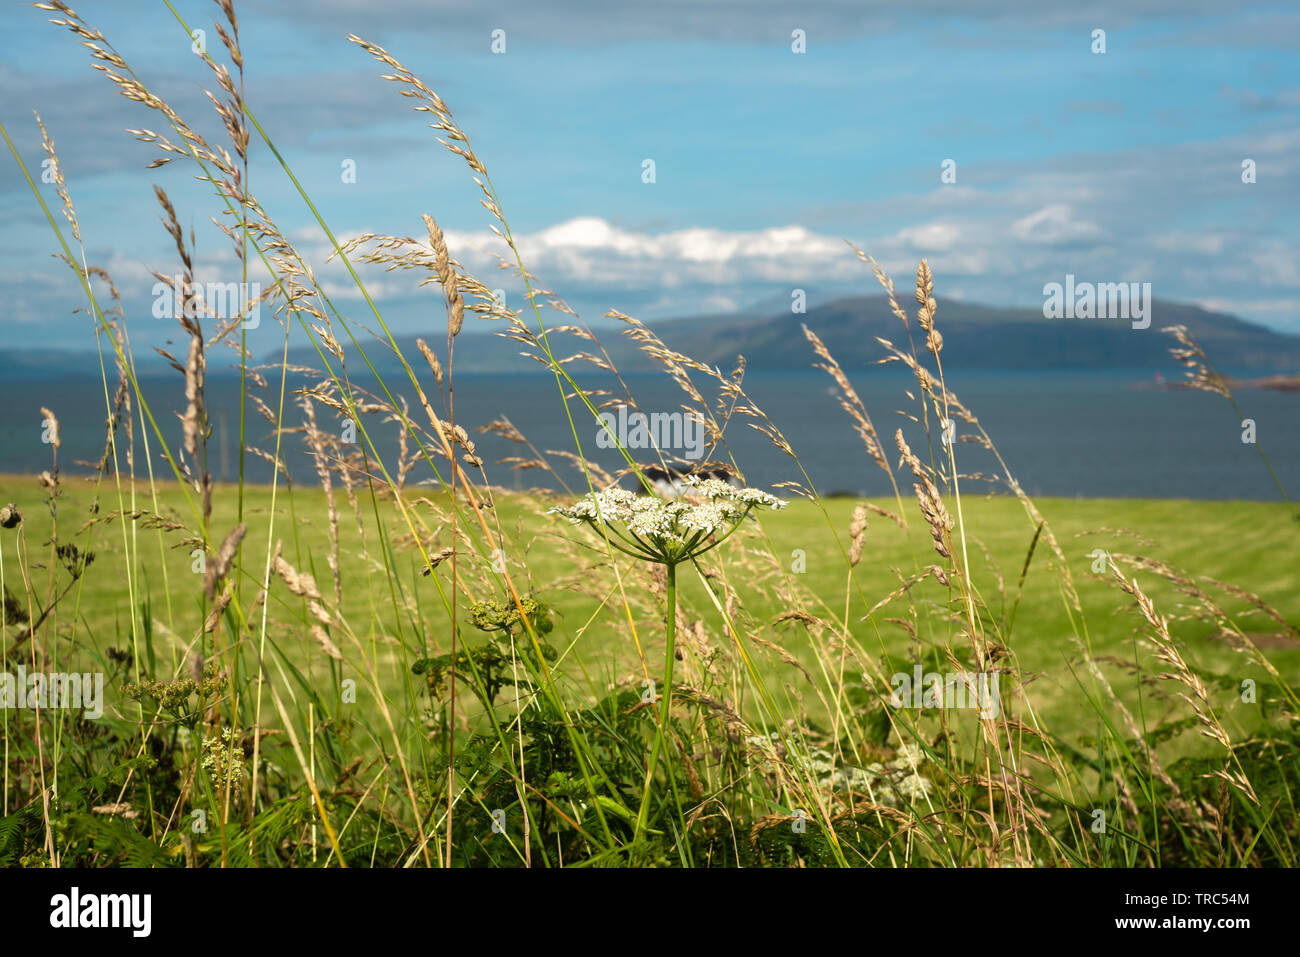 Machair Fiori con il mare e le isole delle Ebridi in background Foto Stock